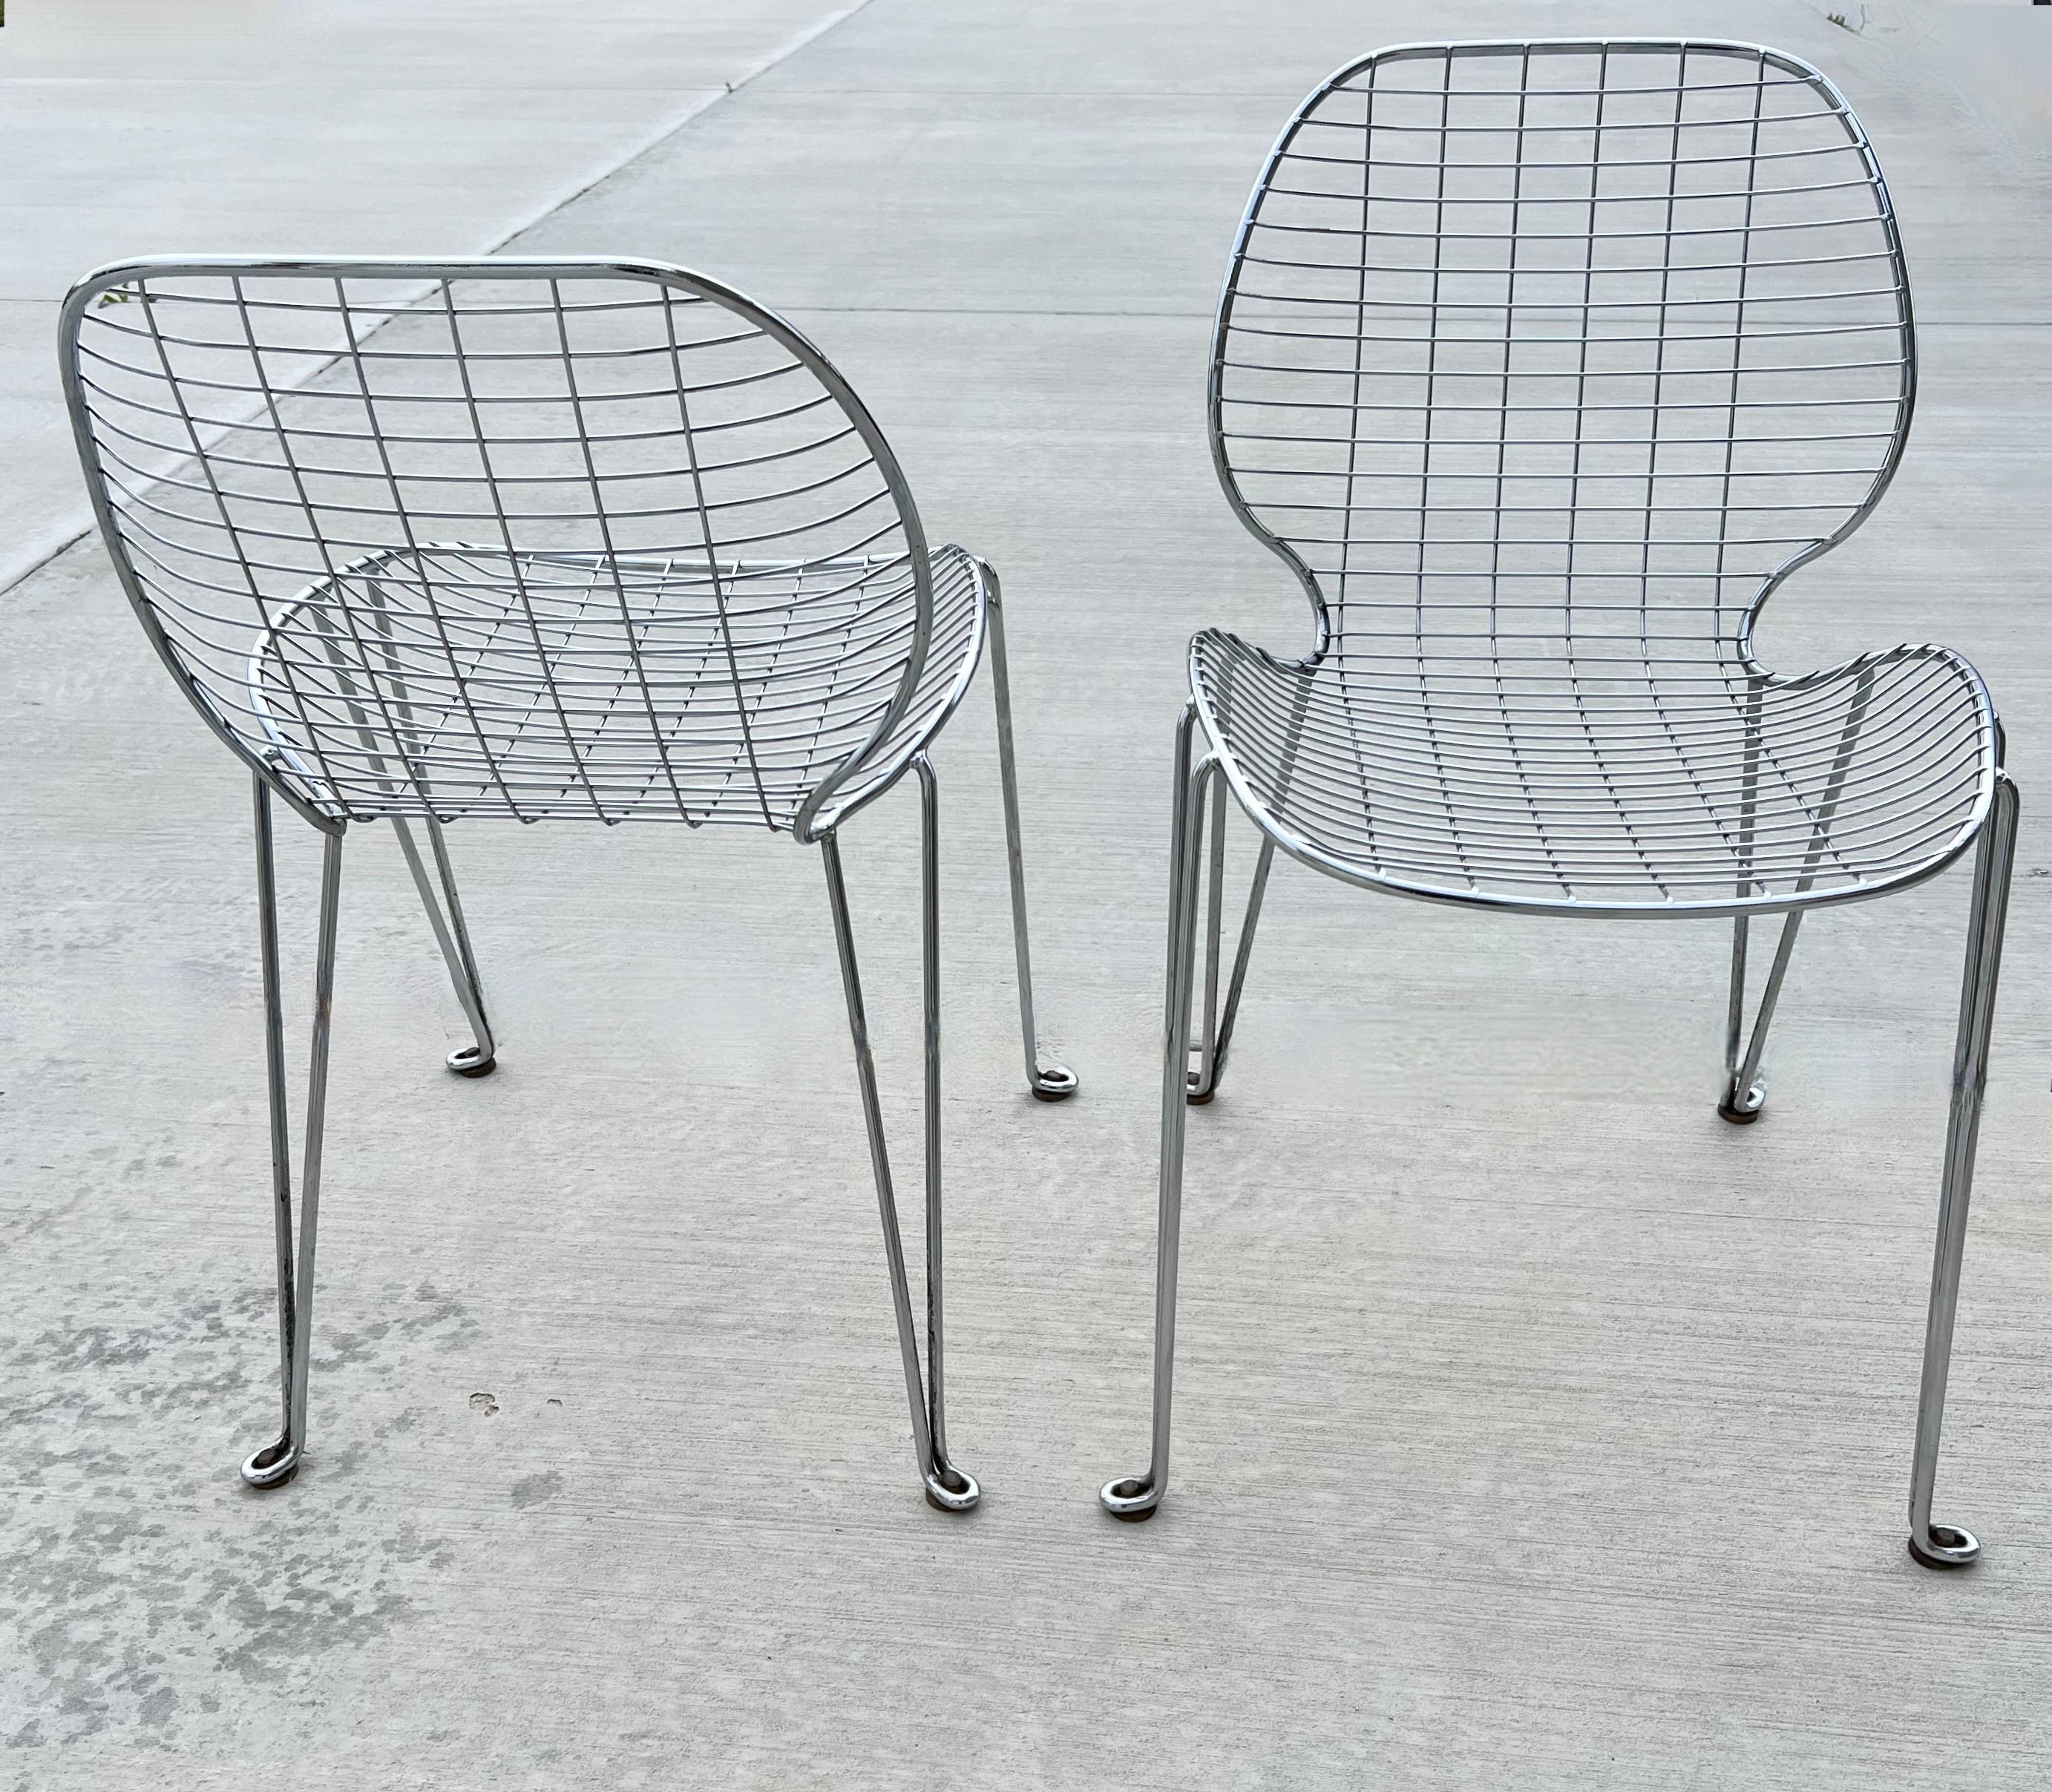 Voici un fabuleux ensemble de quatre chaises vintage en métal chromé aux silhouettes étonnantes et aux pieds en épingle à cheveux. Ils sont très robustes et en très bon état. 

La hauteur du siège est de 19,25